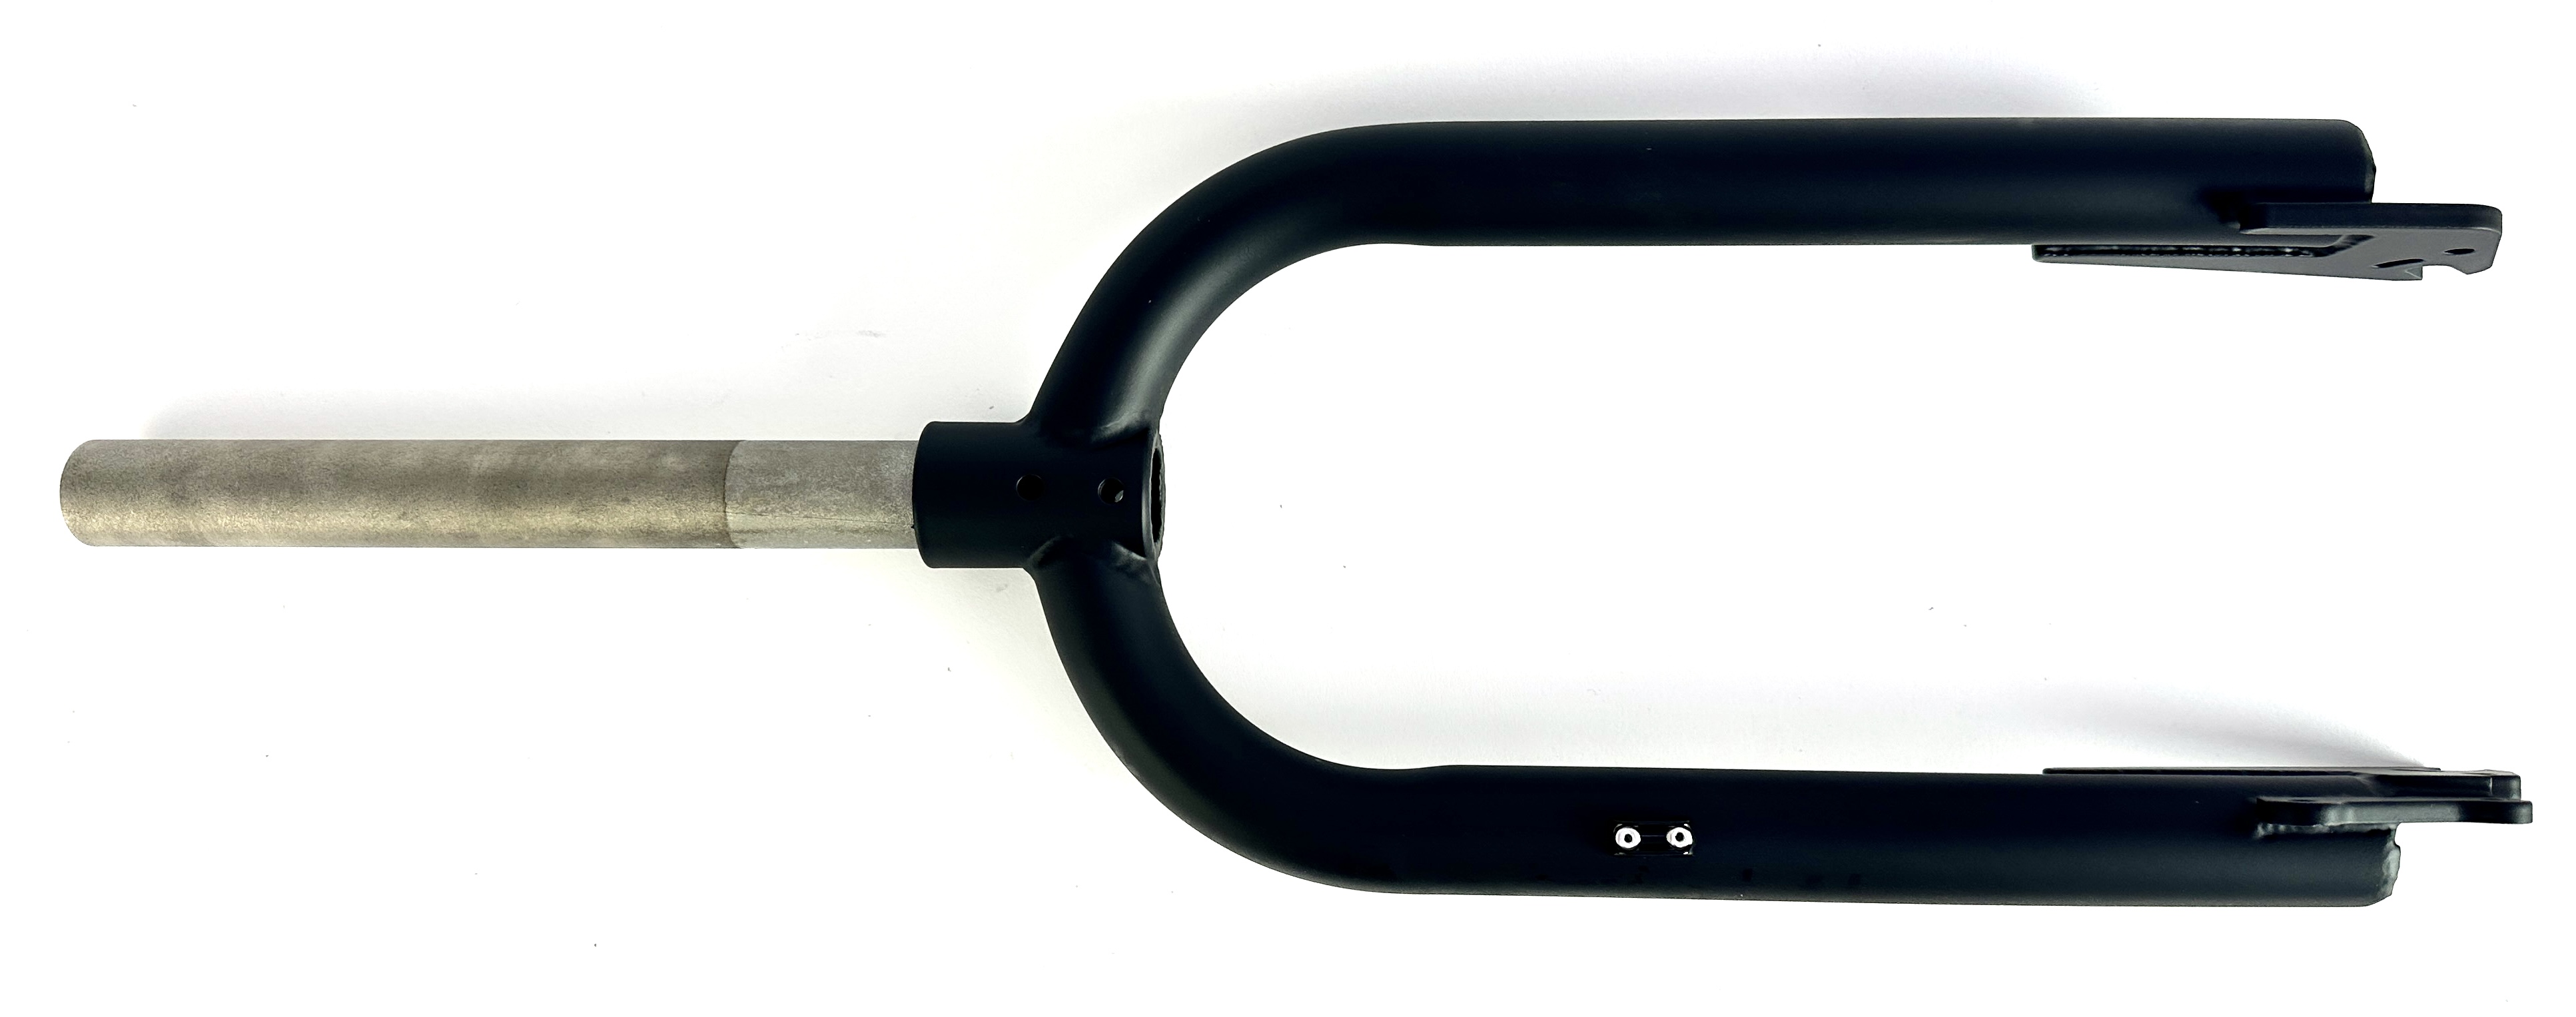 UD 204 rigid fork for fatbike, matte black